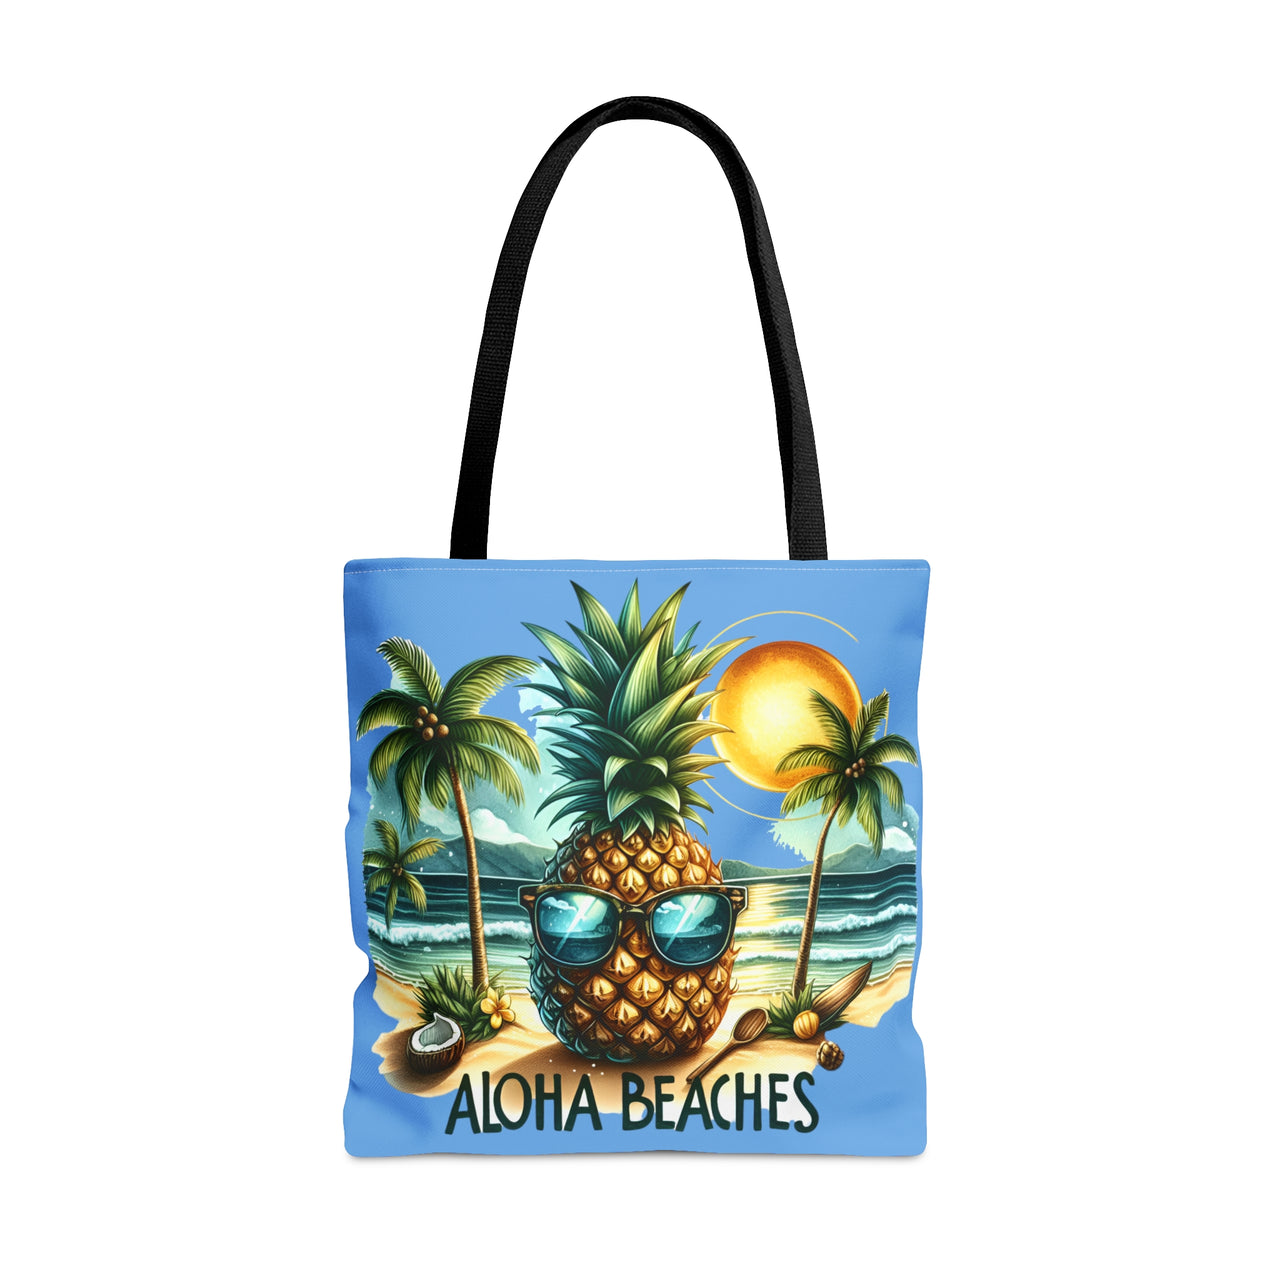 Aloha Beaches Tote Bag